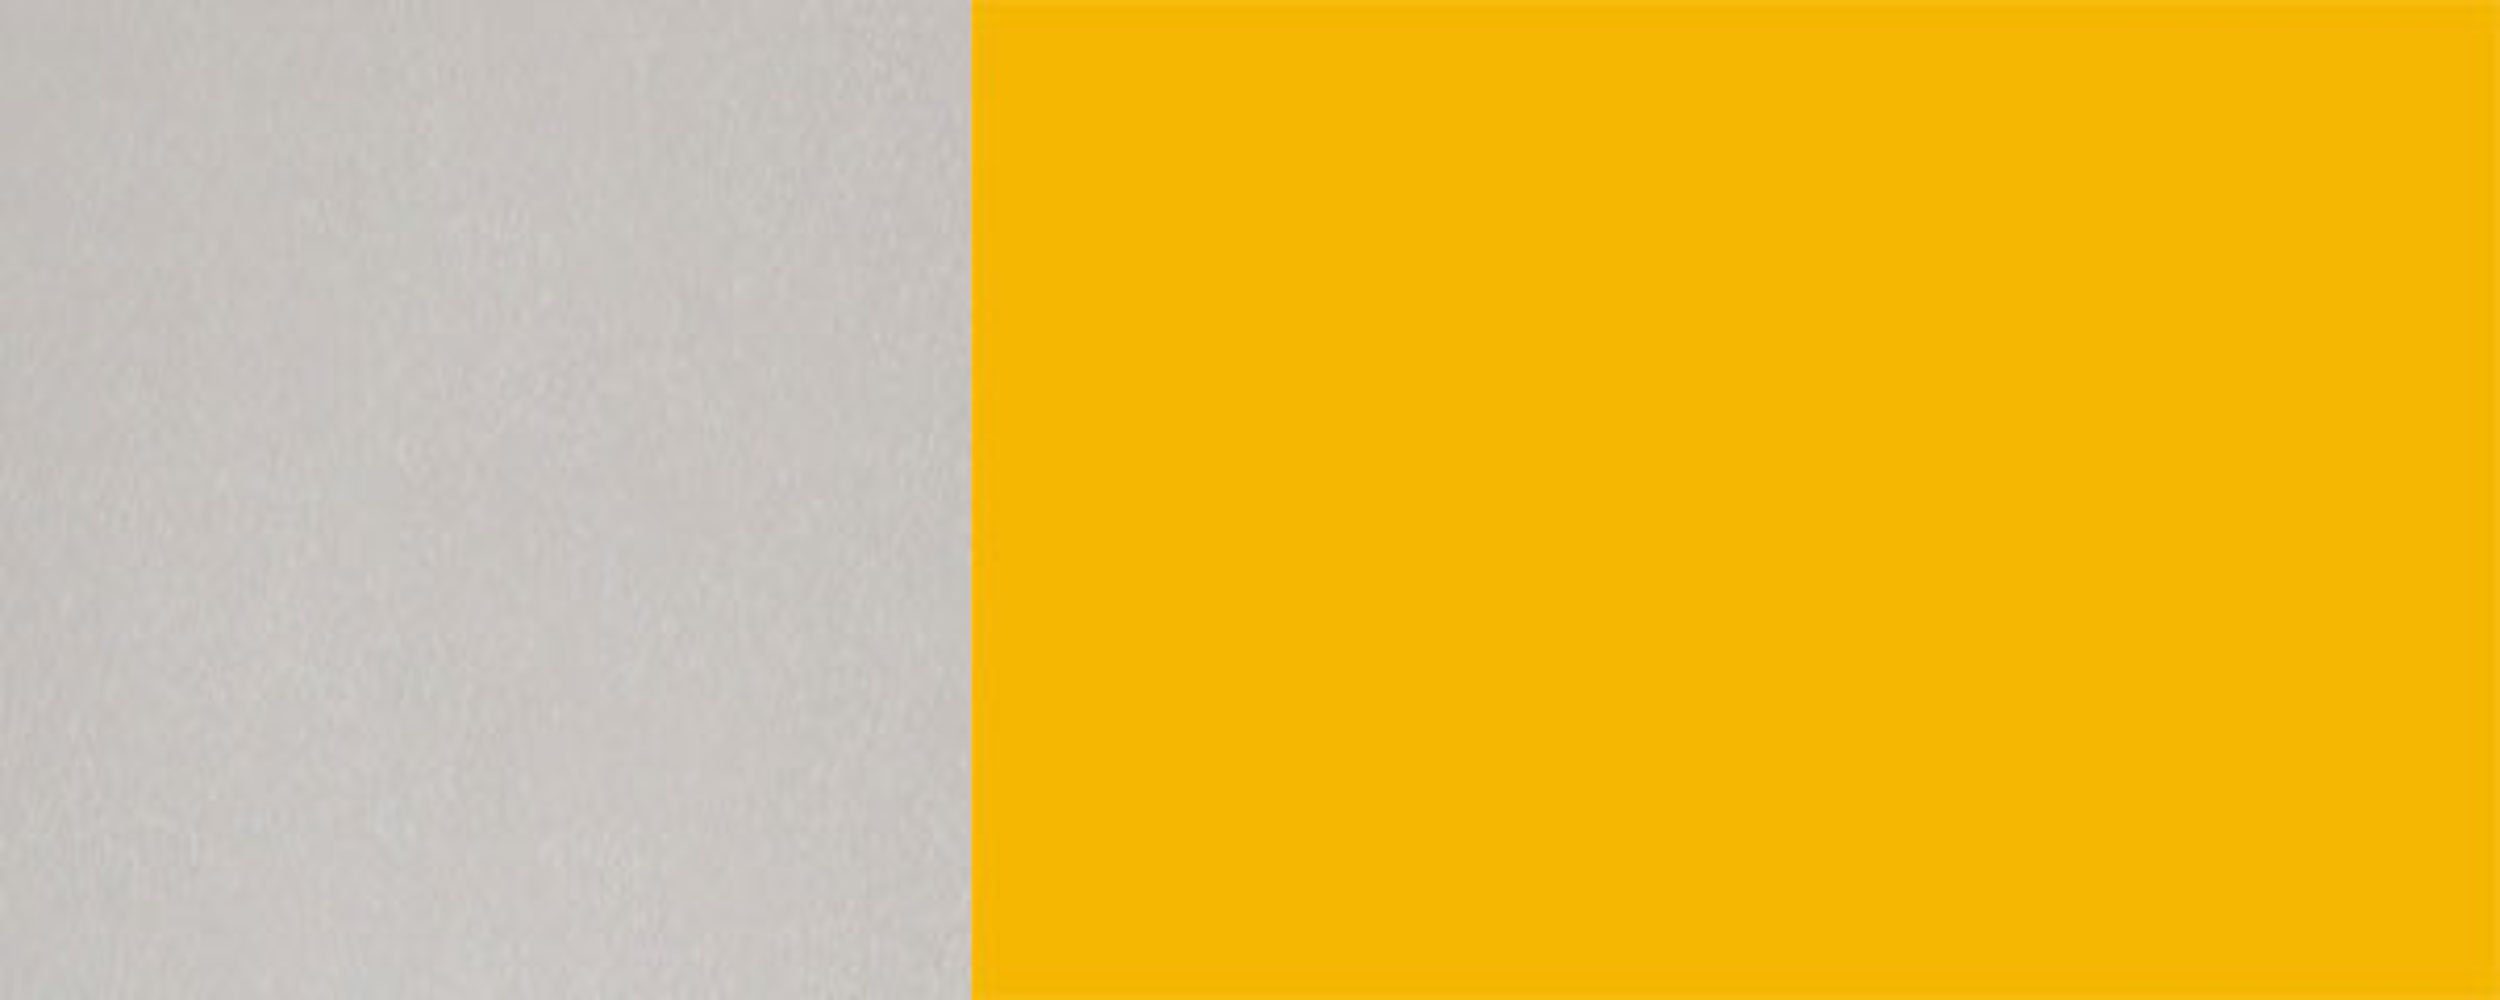 Feldmann-Wohnen Klapphängeschrank Napoli Hochglanz Front-, 30cm und 1-türig grifflos RAL Korpusfarbe Griffausführung rapsgelb wählbar (Napoli) 1021